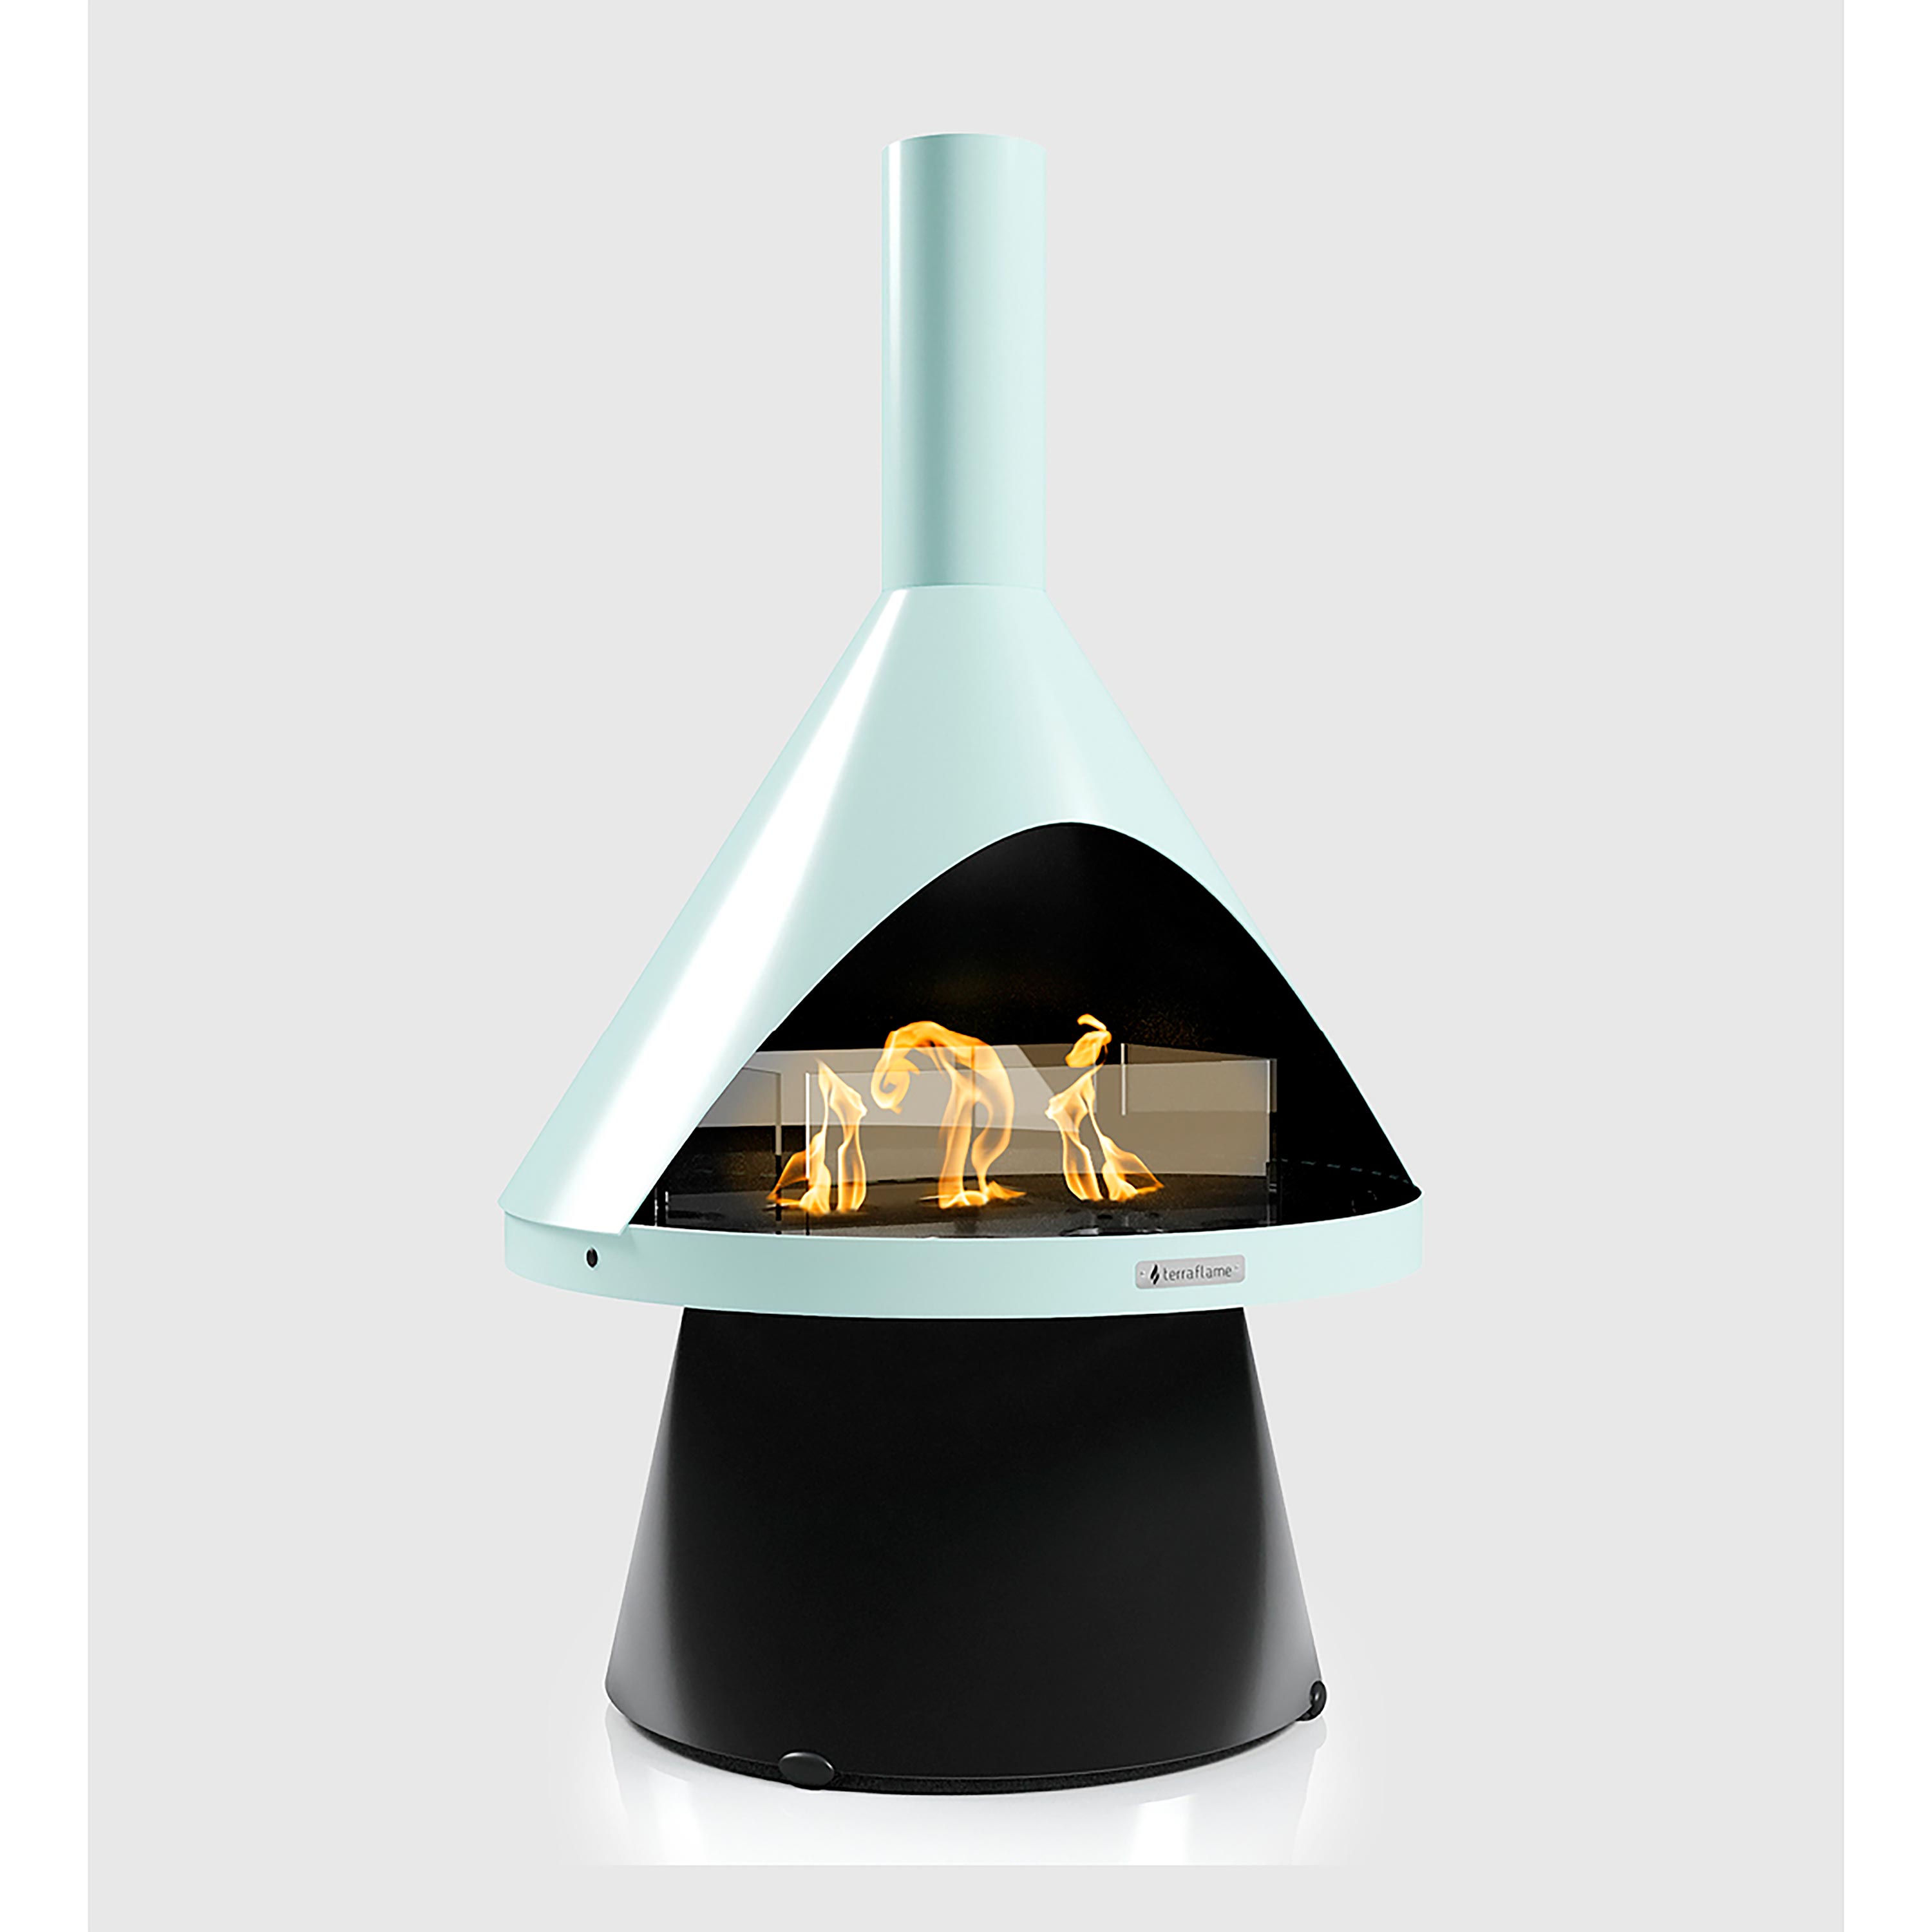 Indoor/ Outdoor Mid-Mod Gel Fuel Fireplace swatch image